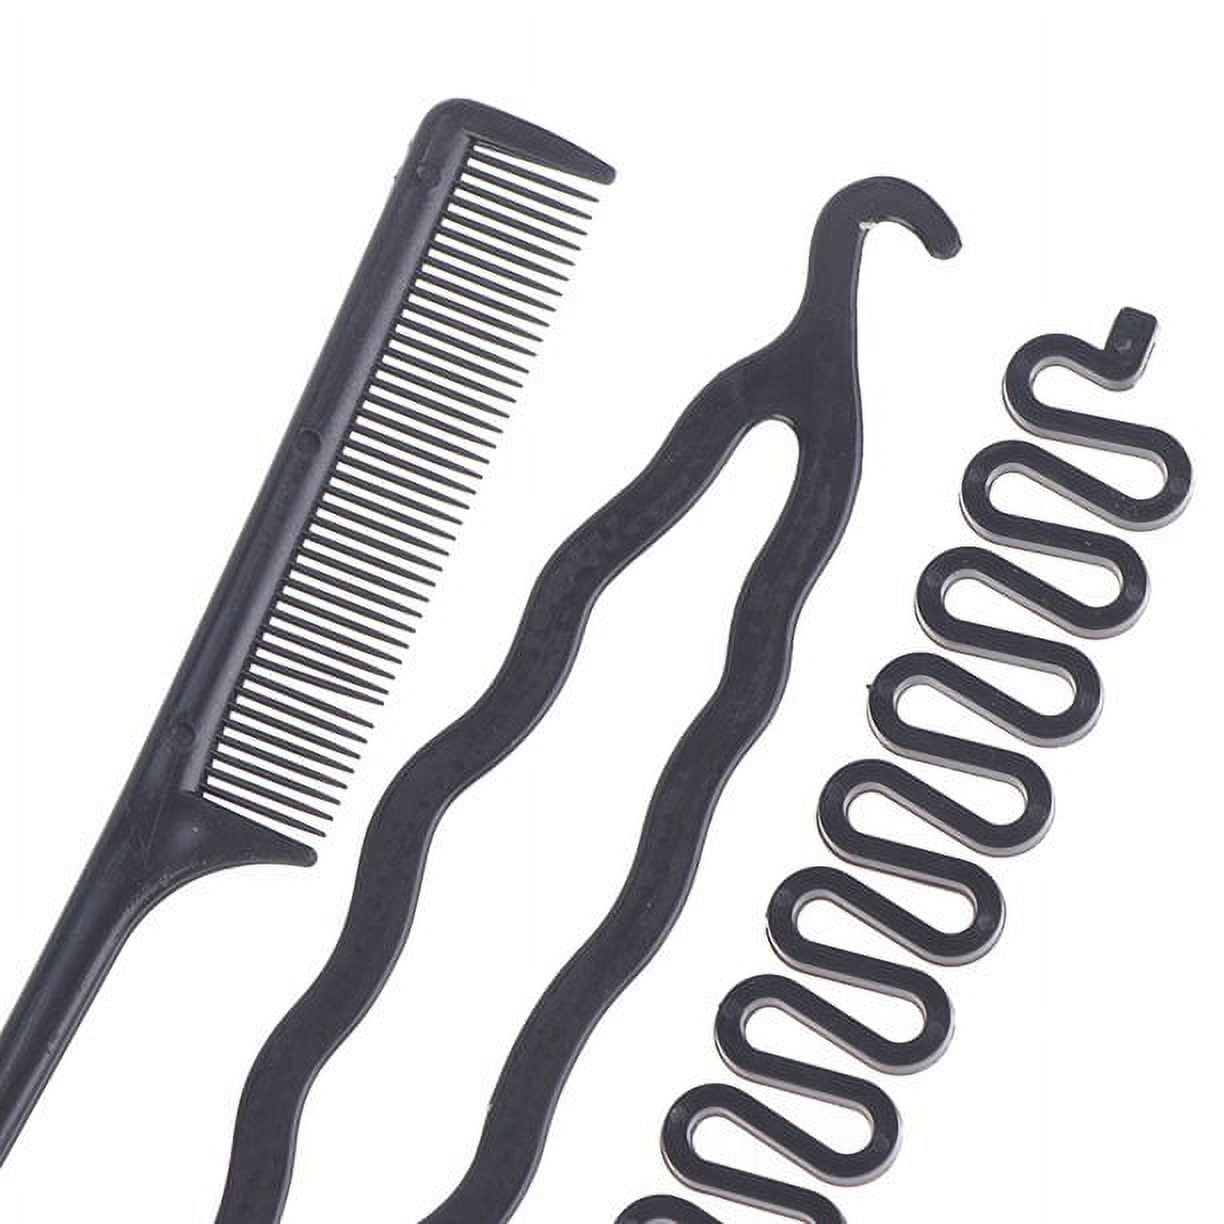 6pcs/set Hairstyle Braiding Tools Pull-through Hair Needle Dispenser Hair  C_AM